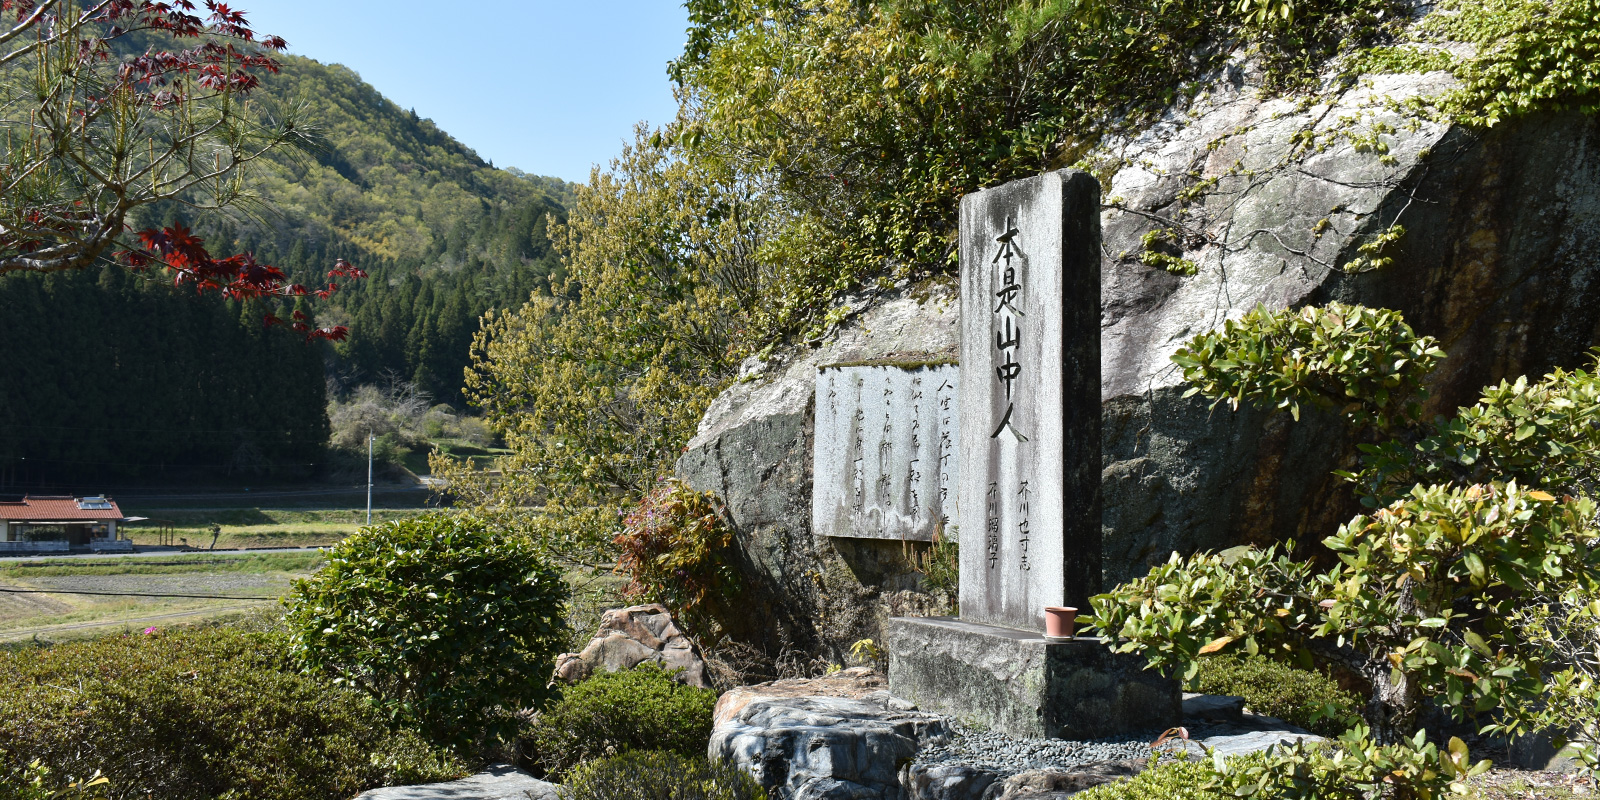 石碑には芥川龍之介が実父新原敏三と故郷を想って書いた文が刻まれています